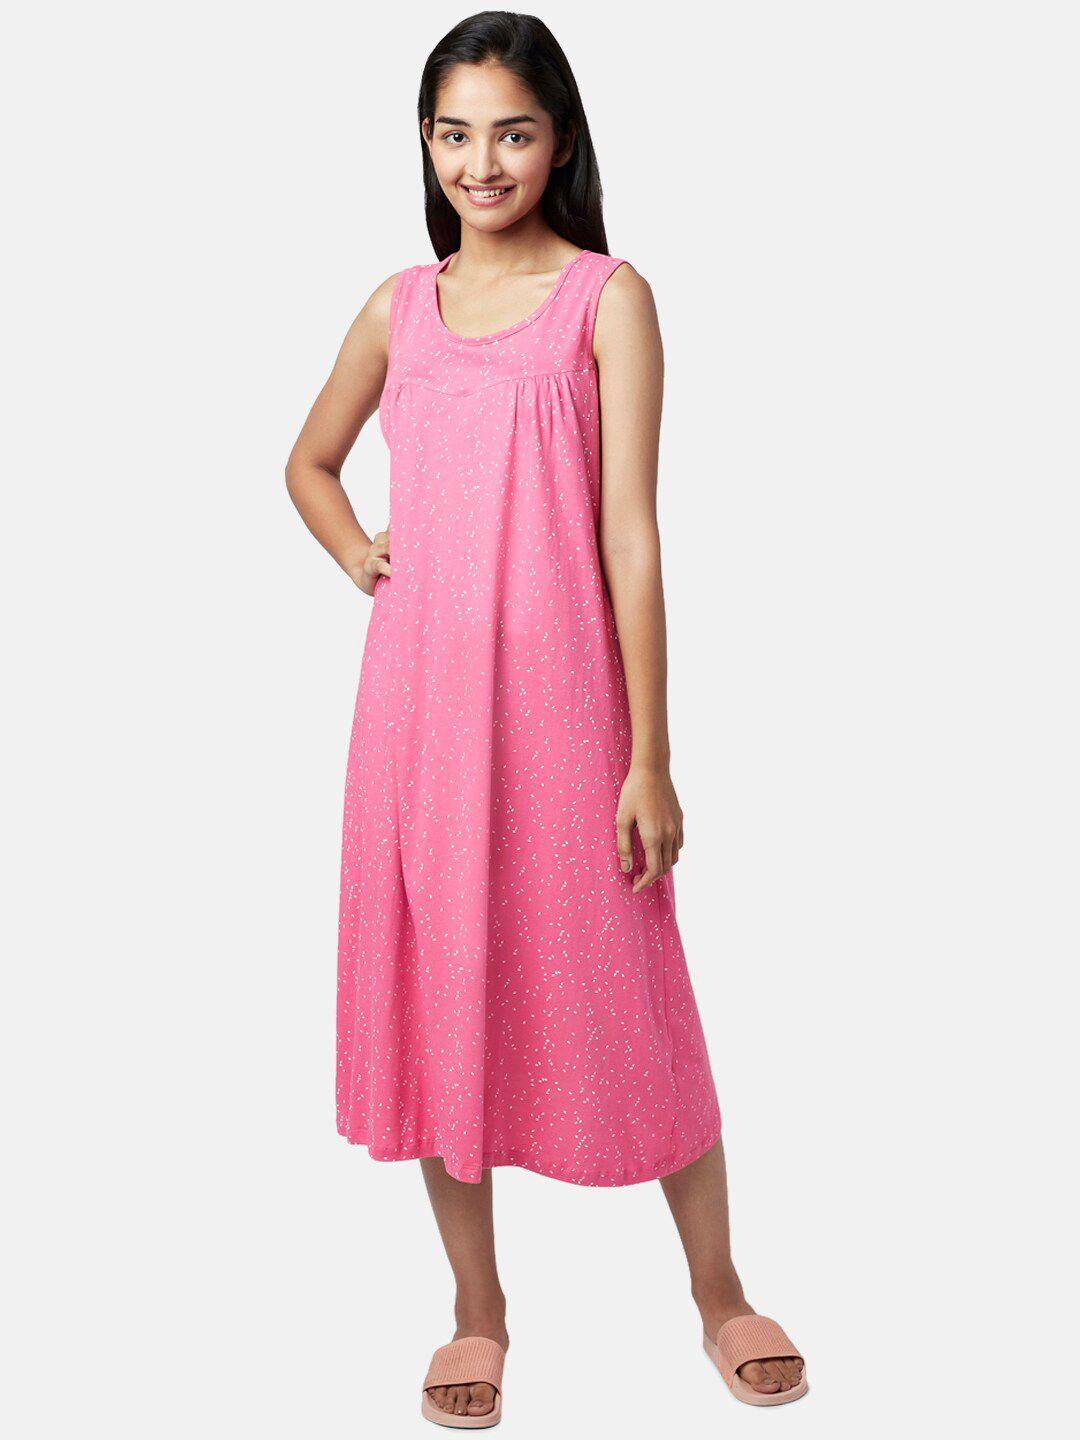 yu by pantaloons women pink geometric printed nightdress